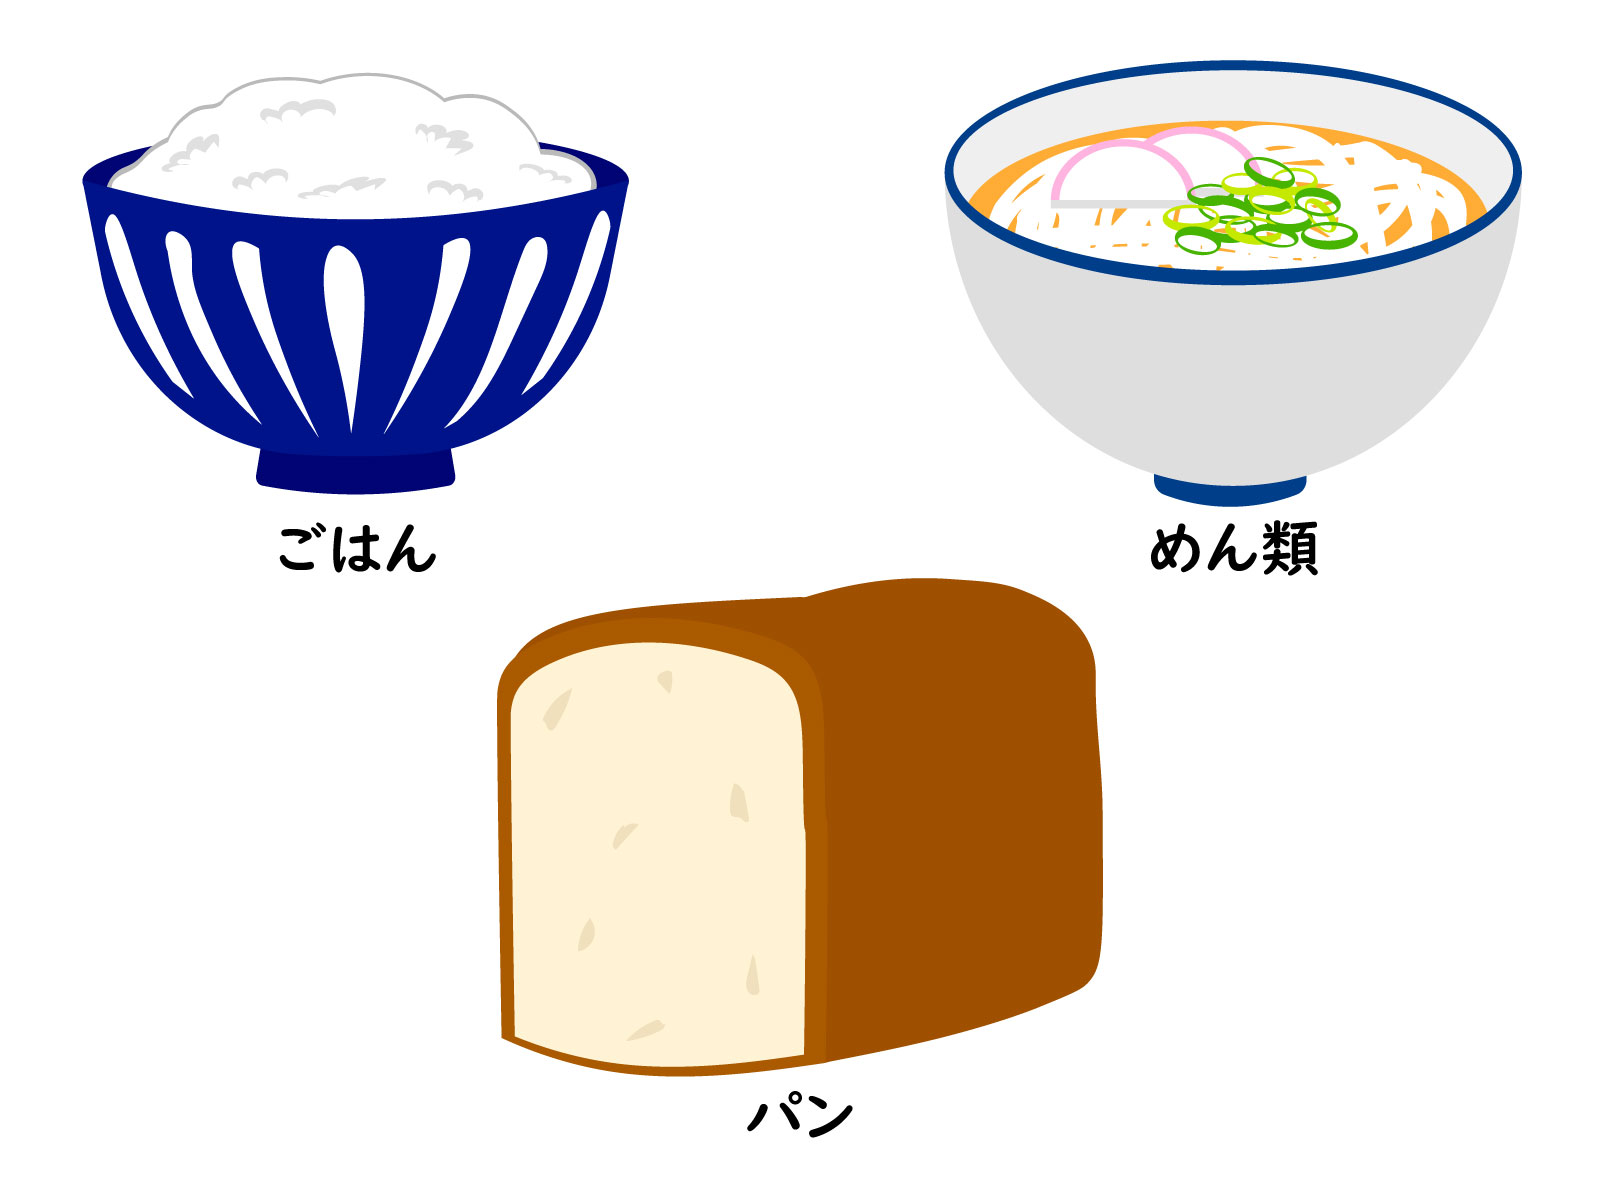 米、小麦粉、パスタ、袋麺 ← 最もコスパが良い主食はどれ？